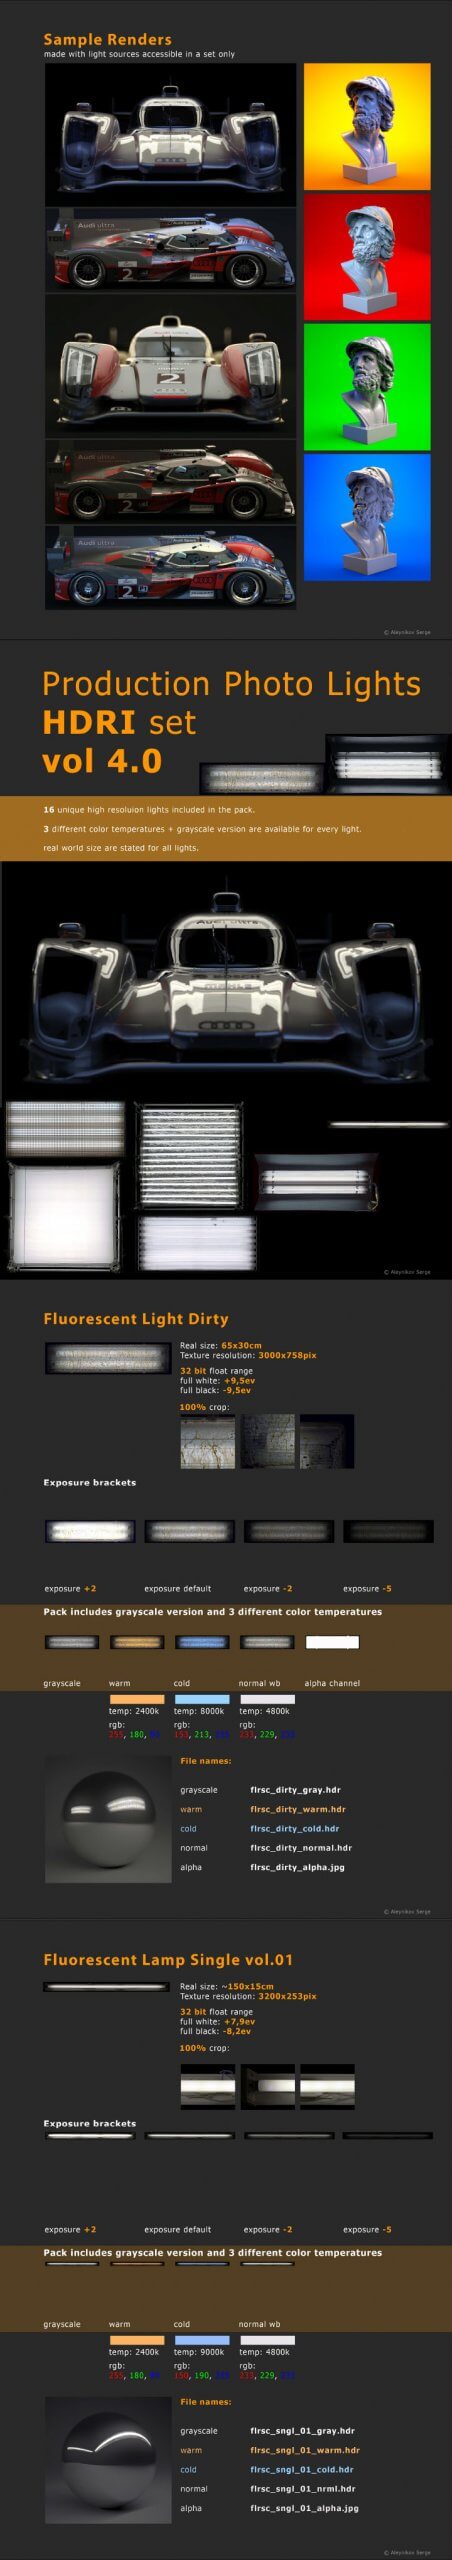 产品摄影工作室效果的HDRI灯光图片套装下载 (hdr)